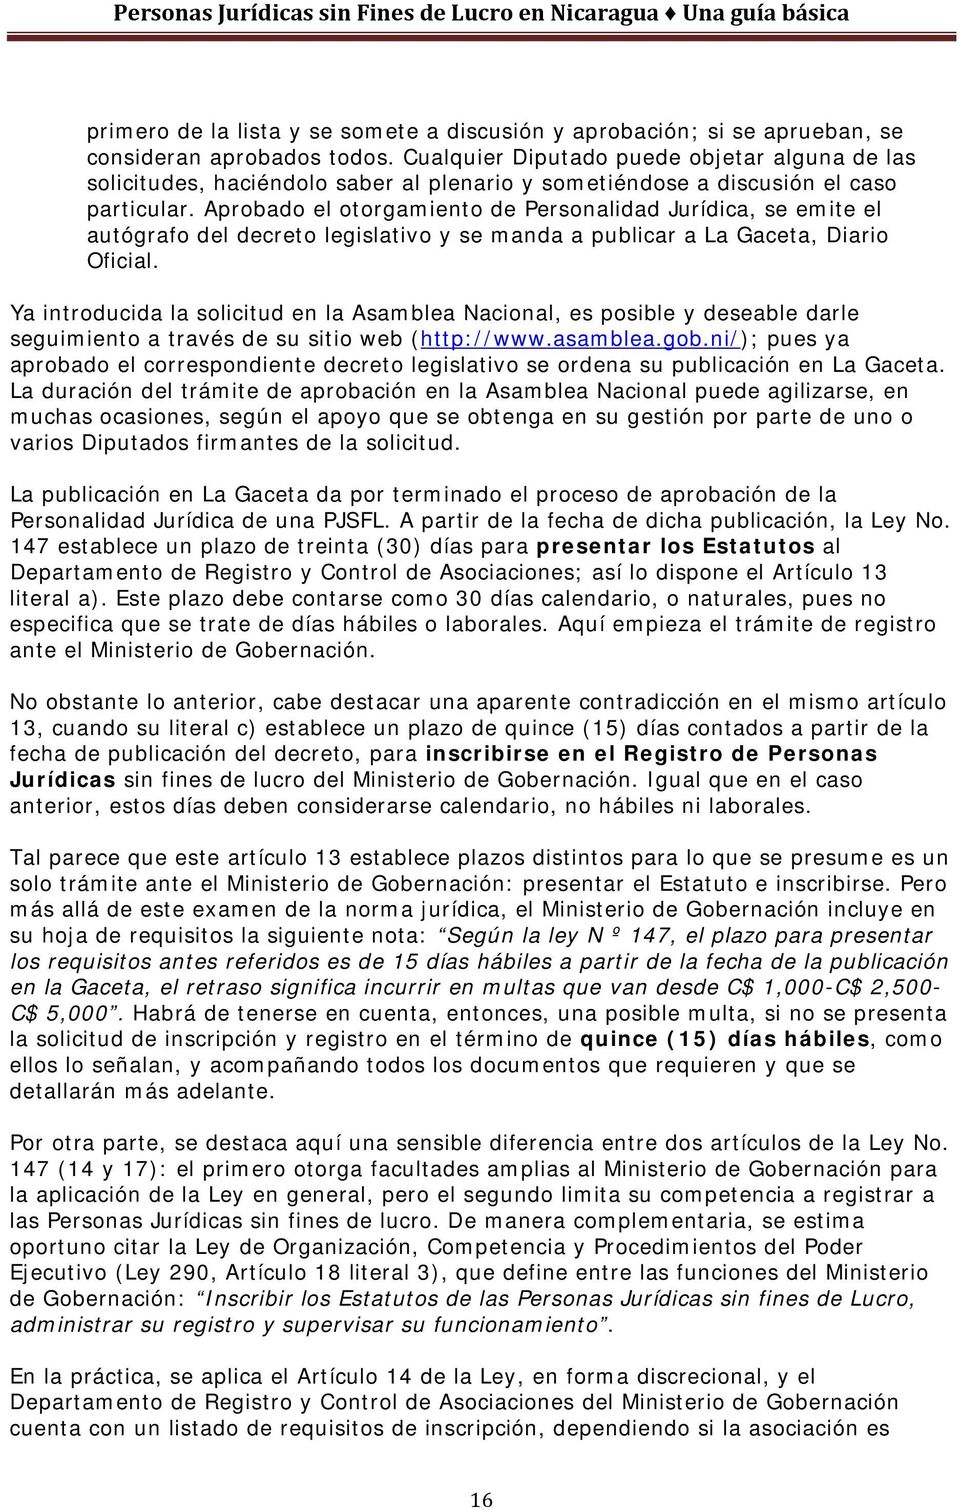 Aprobado el otorgamiento de Personalidad Jurídica, se emite el autógrafo del decreto legislativo y se manda a publicar a La Gaceta, Diario Oficial.